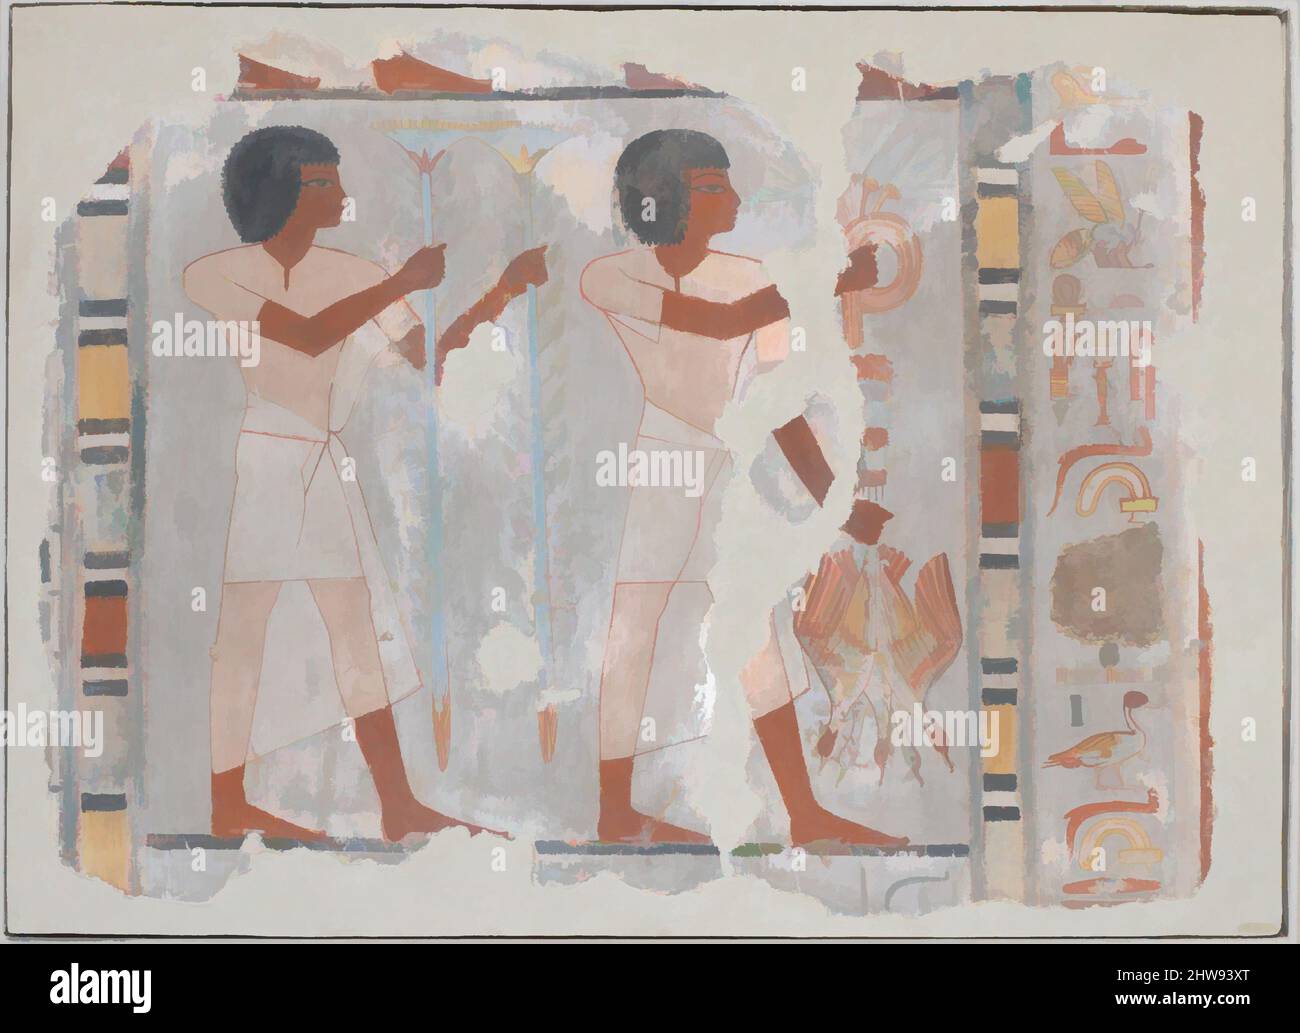 Arte ispirata da un frammento di pittura murale della Tomba di Sebekhotep, New Kingdom, Dynasty 18, ca. 1550–1295 a.C., dall'Egitto, dall'Egitto superiore, da Tebe, dallo sceicco Abd el-Qurna, Tomba di Sebekhotep (TT 63), Tempera vernice su intonaco di fango, H. 53,5 cm (21 1/16 poll.); W. 73,5 cm (28 15/16 poll.); D. 8., opere classiche modernizzate da Artotop con un tuffo di modernità. Forme, colore e valore, impatto visivo accattivante sulle emozioni artistiche attraverso la libertà delle opere d'arte in modo contemporaneo. Un messaggio senza tempo che persegue una nuova direzione selvaggiamente creativa. Artisti che si rivolgono al supporto digitale e creano l'NFT Artotop Foto Stock